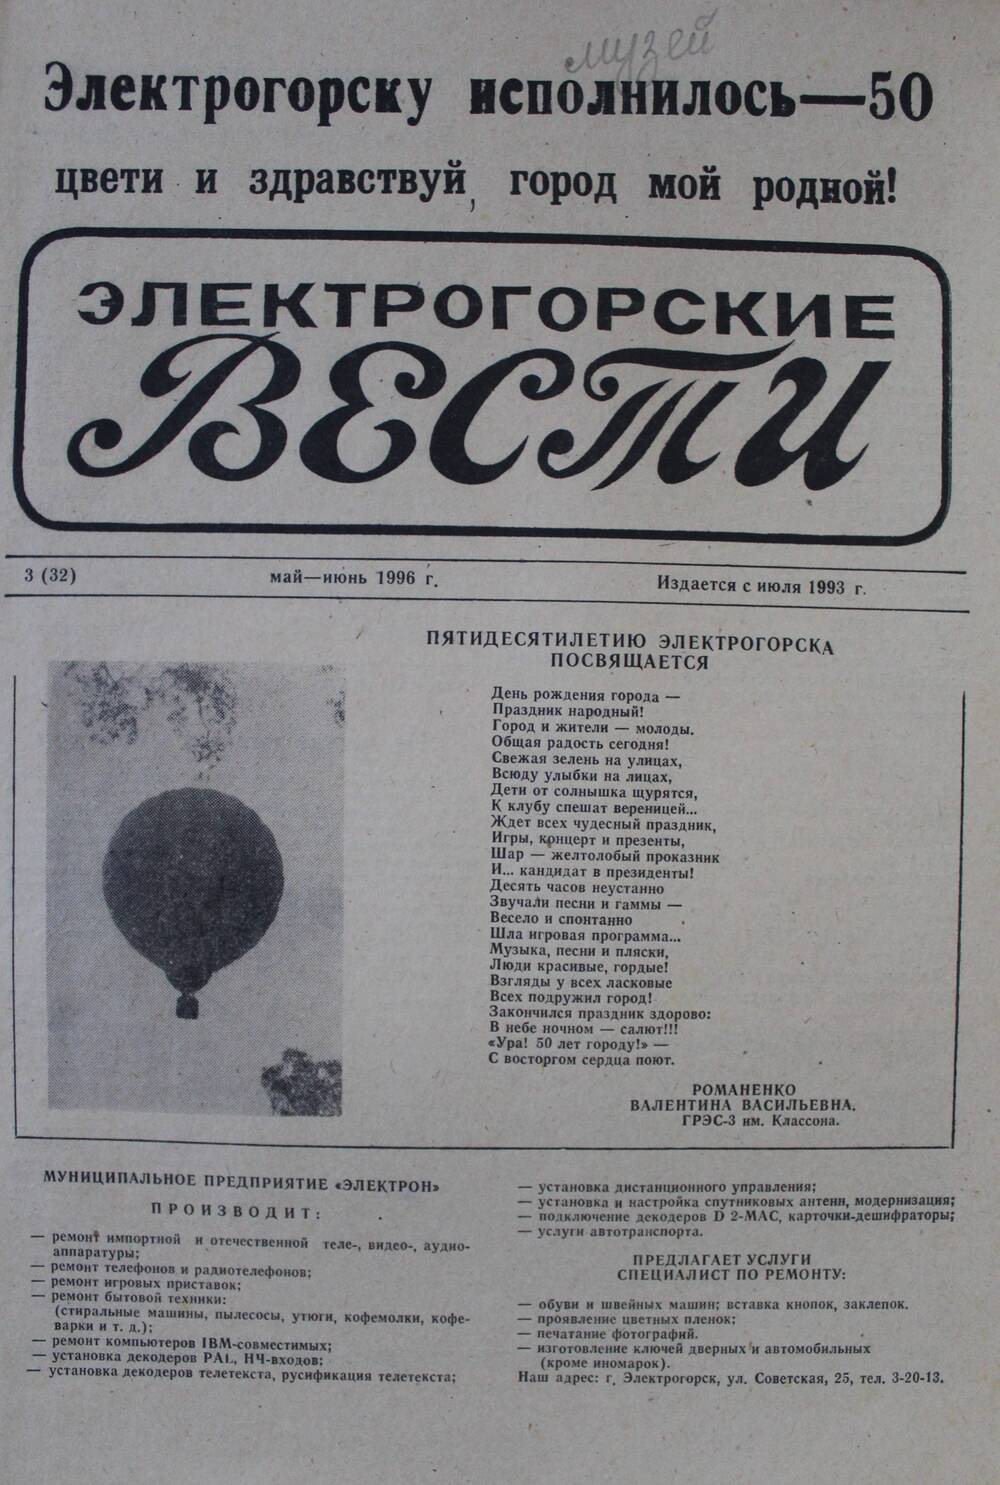 Газета Электрогорские вести №3 (32) май - июнь 1996 г.